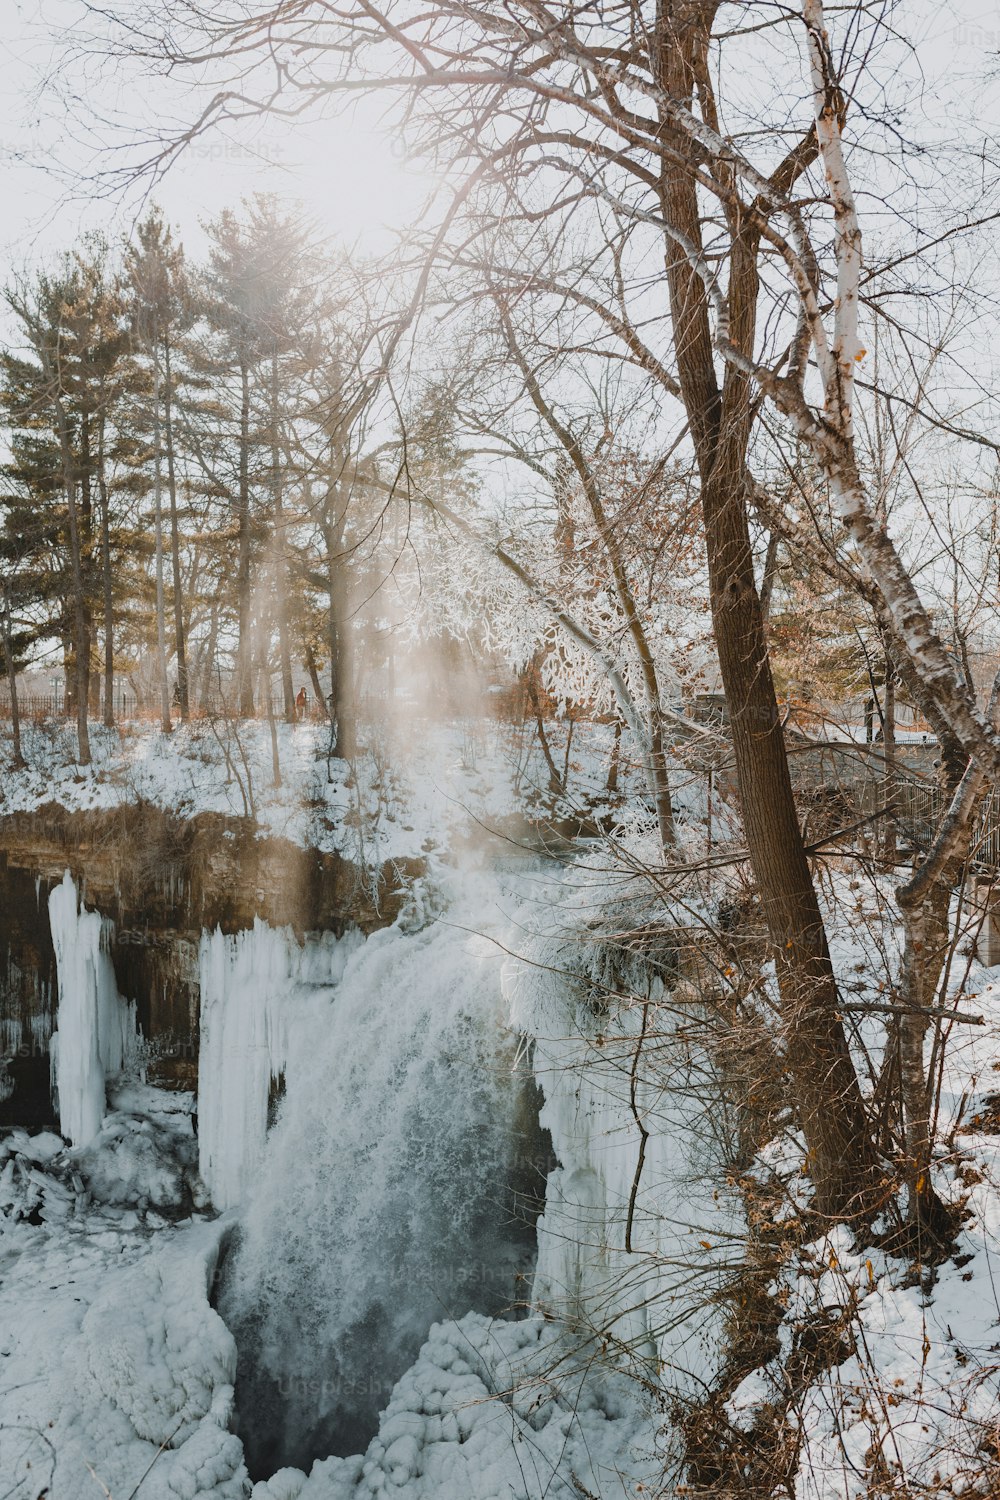 Una cascata ghiacciata circondata da alberi e neve